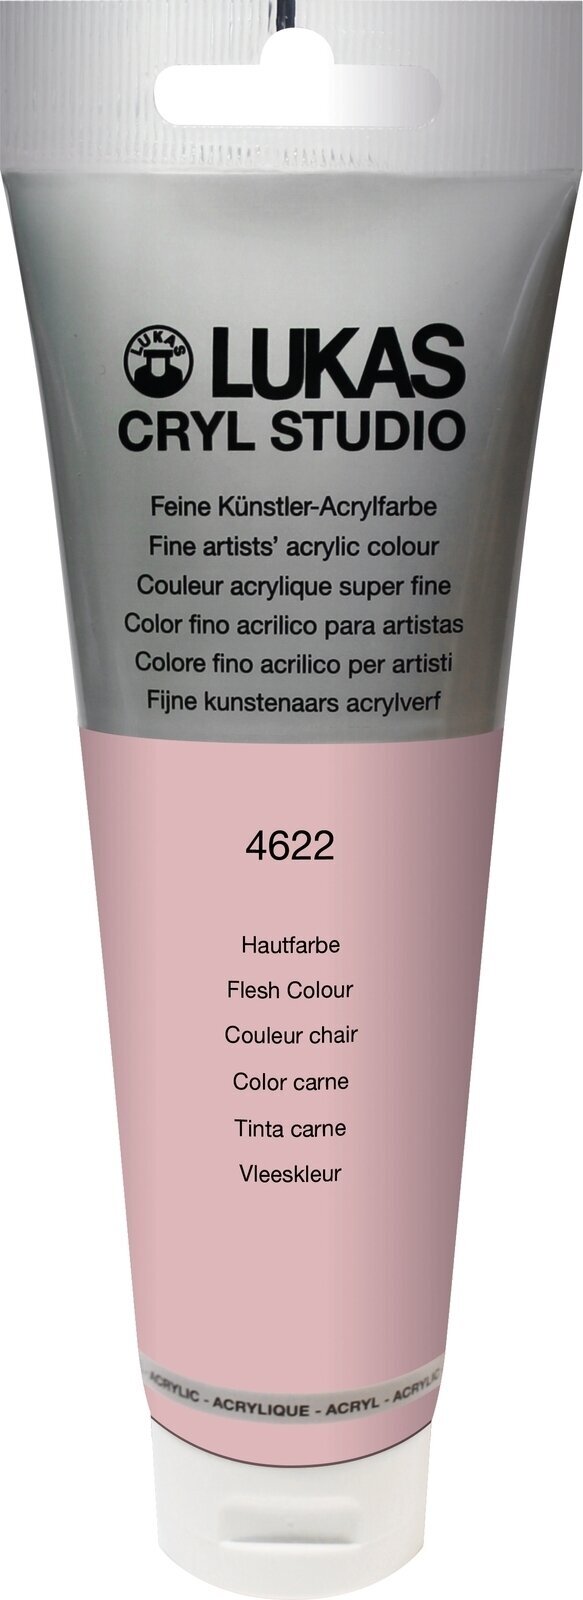 Akrylová farba Lukas Cryl Studio Acrylic Paint Plastic Tube Akrylová farba Peach Pink 125 ml 1 ks